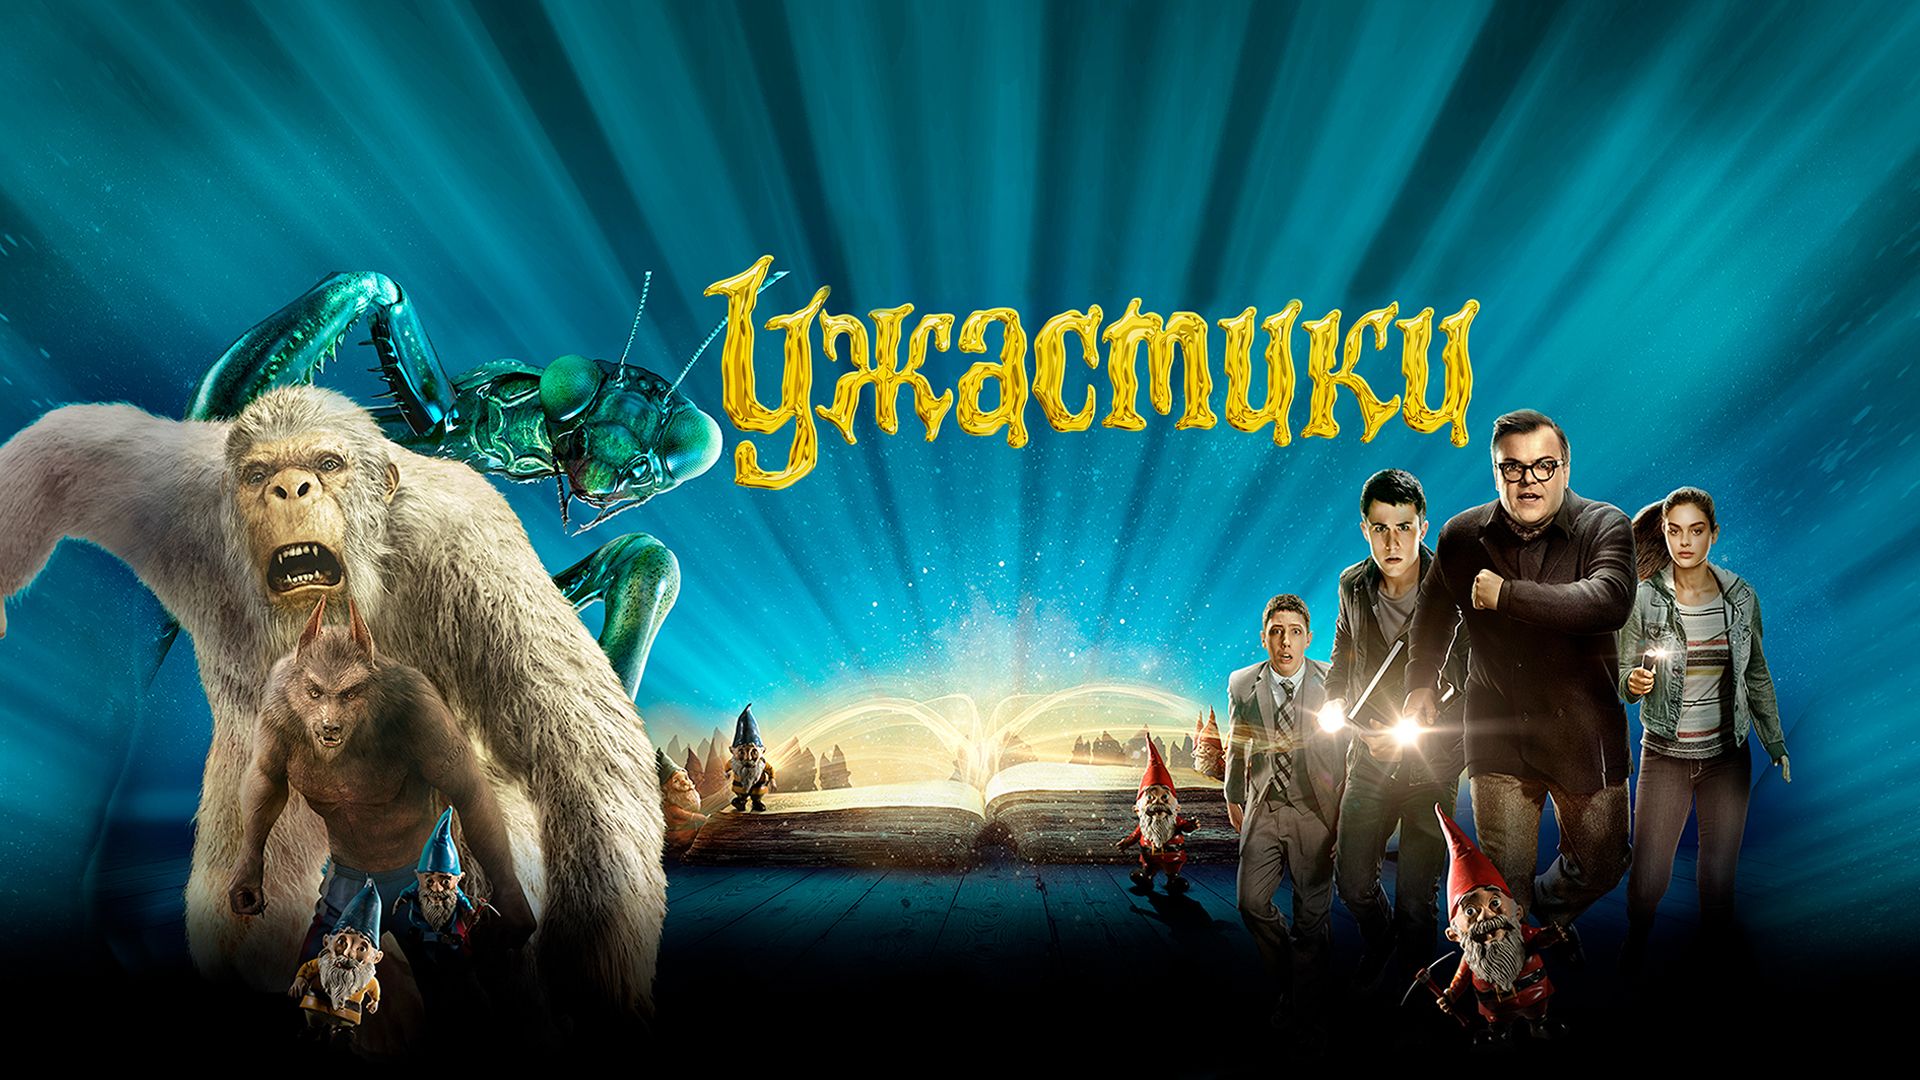 Приключение комедии фантастики ужасы. Ужастики Goosebumps. (2015) Постер. Ужастики 2015 Постер. Ужастики (2015) обложка.